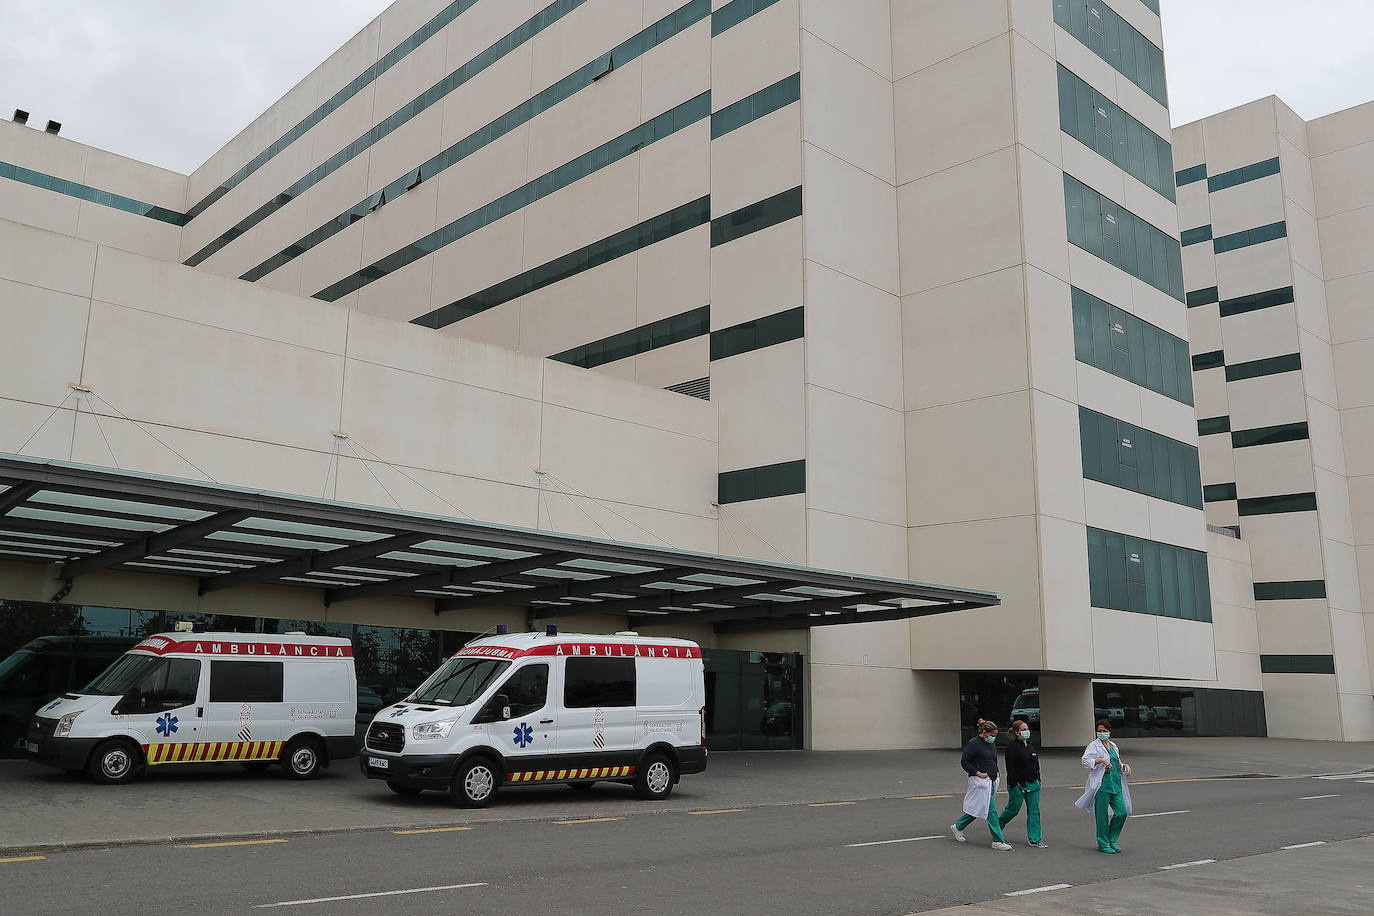 Sanitarios libran desde hace dos semanas una lucha contra el coronavirus en los diferentes hospitales de la Comunitat Valencia. Cada tarde, a las 20.00 horas, reciben el aplauso de los vecinos confinados desde sus balcones y de las fuerzas de seguridad.